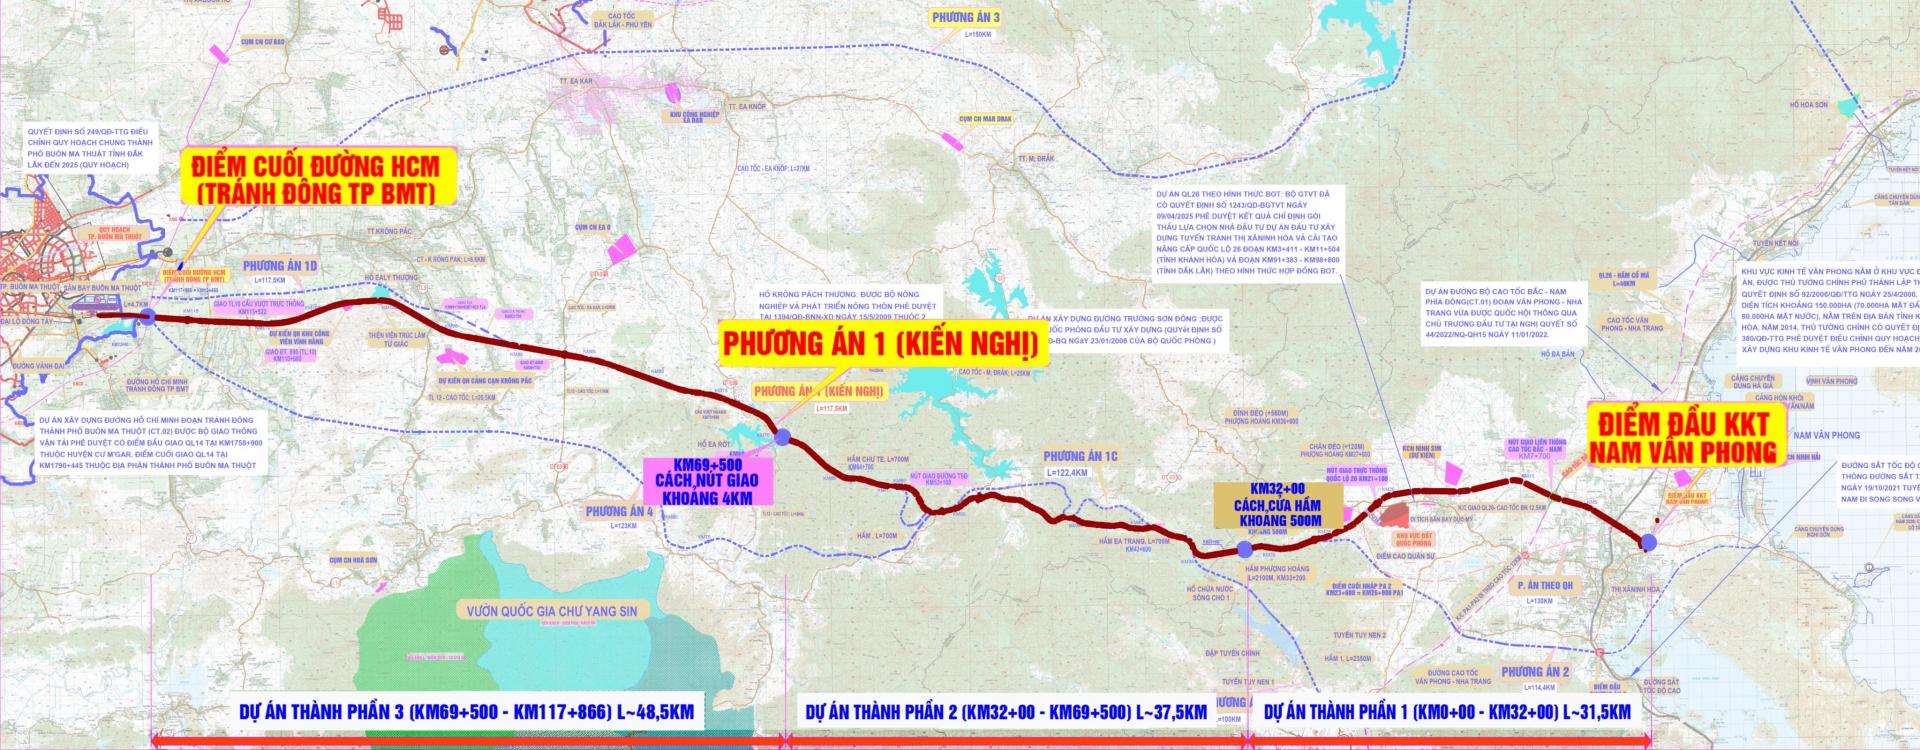 Bộ sưu tập bản đồ đường cao tốc Đắk Lắk Khánh Hòa hiện đại và chi tiết